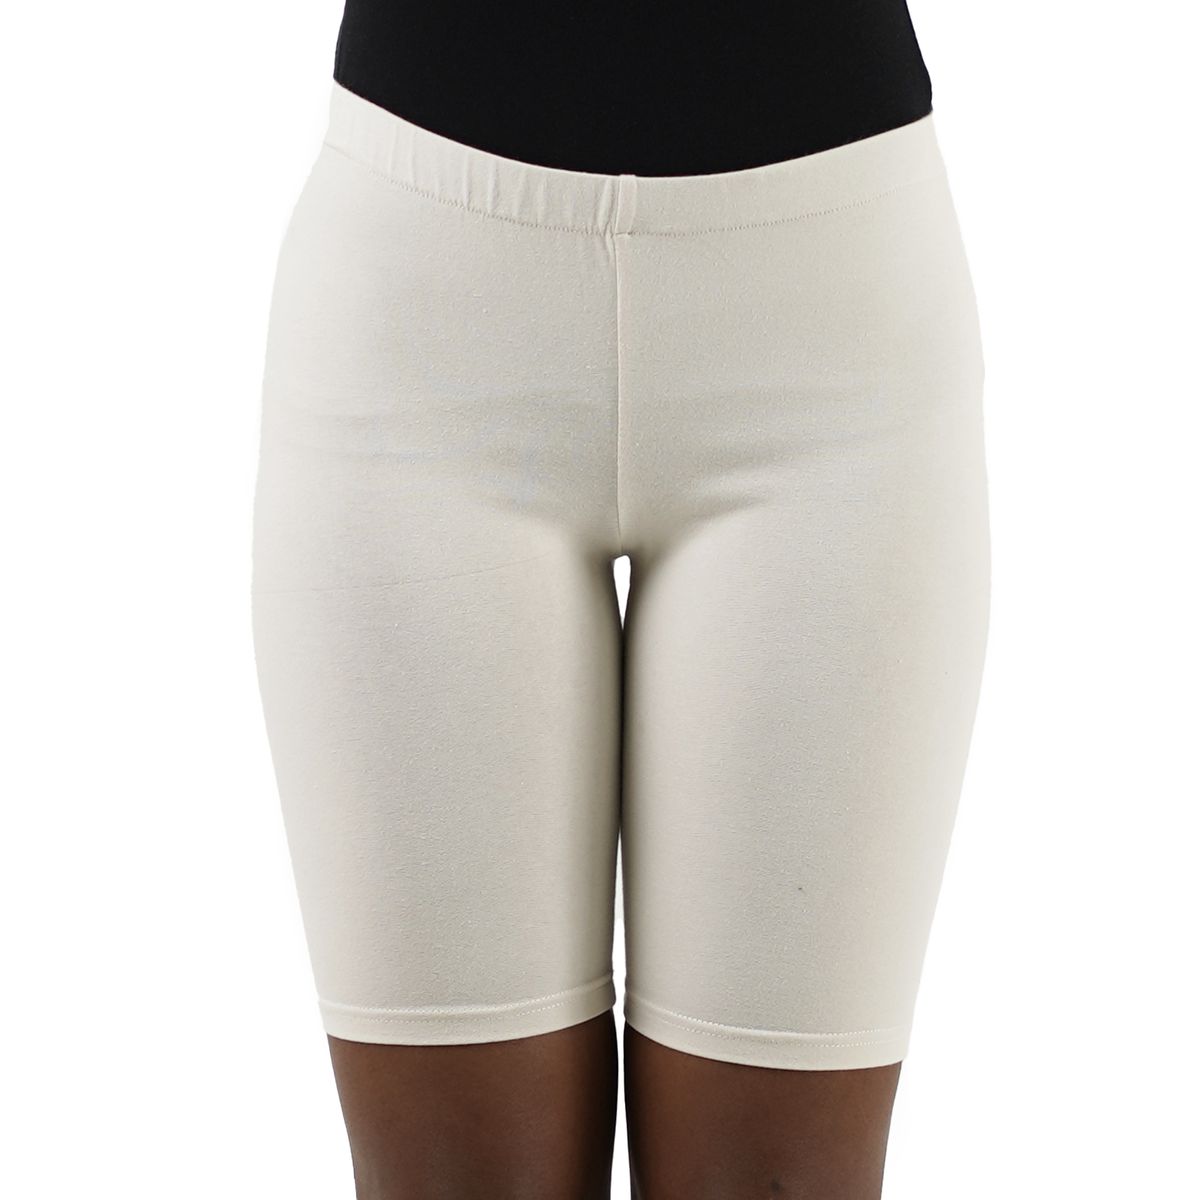 Unbranded Ladies Short Leggings - White | Buy Online in South Africa ...